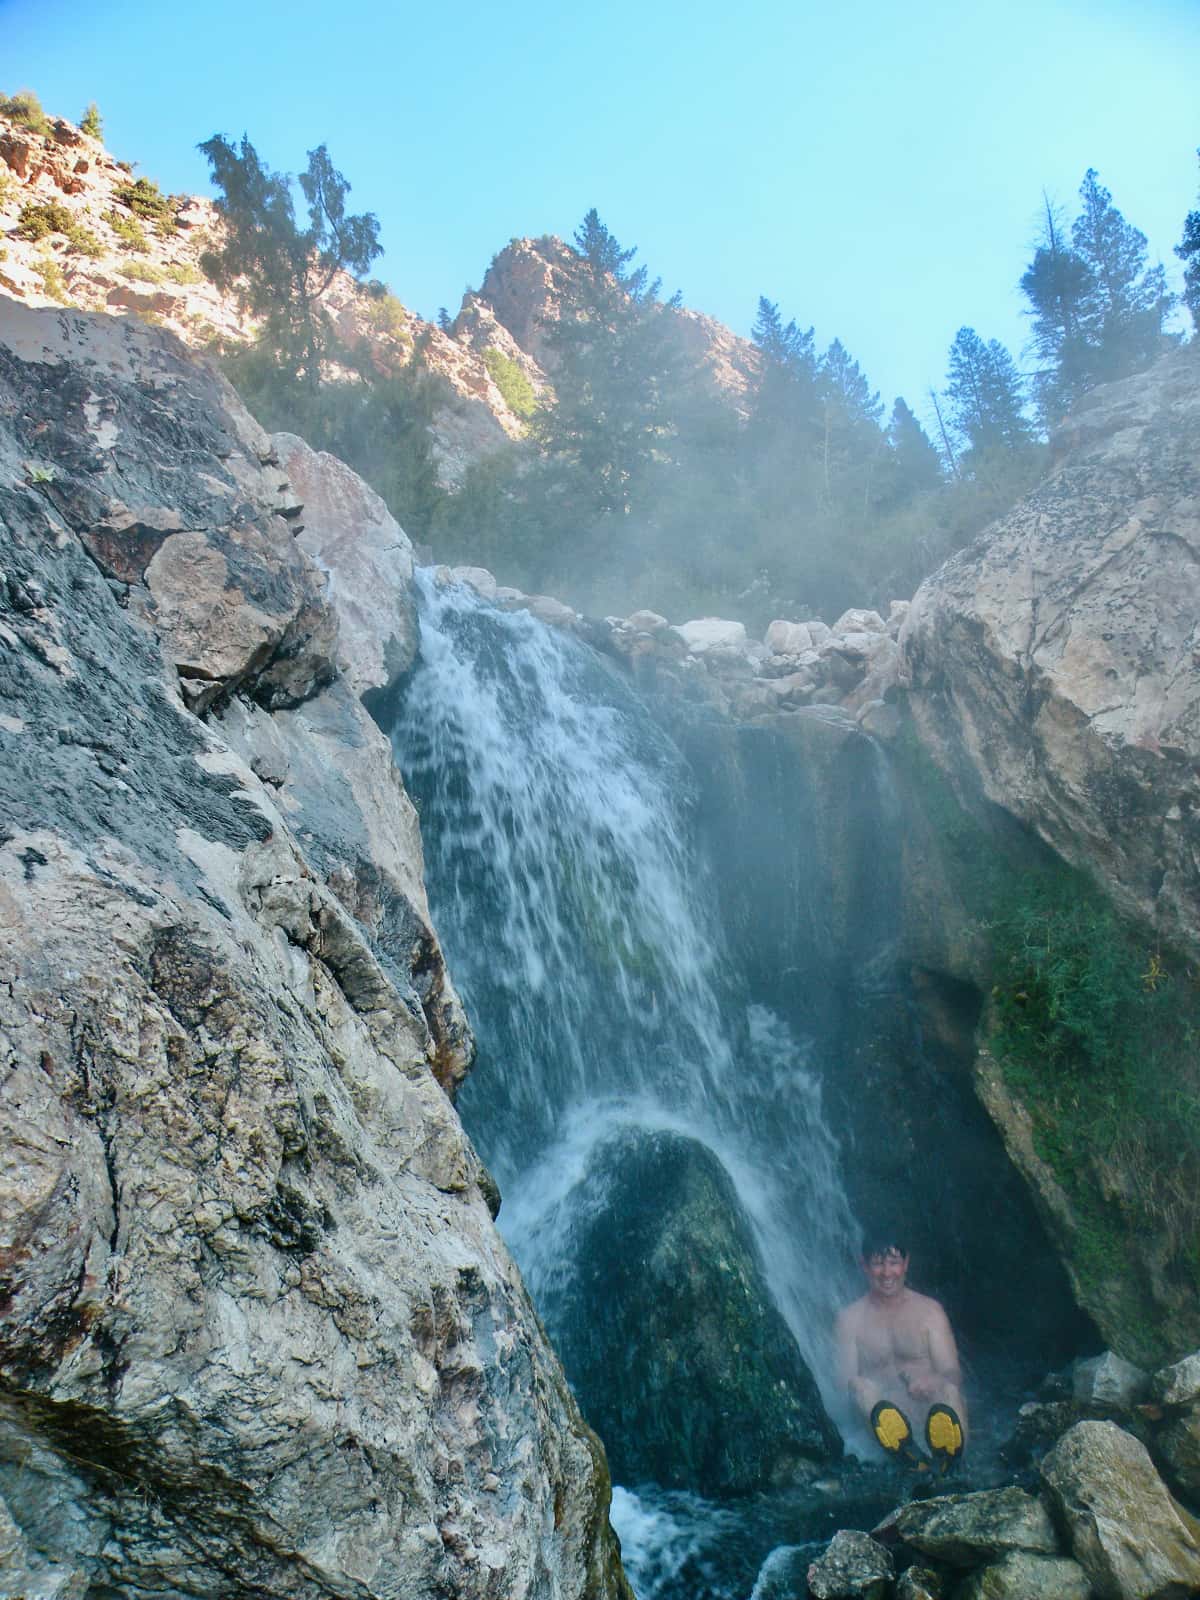 Man soaking in mountain rock pool